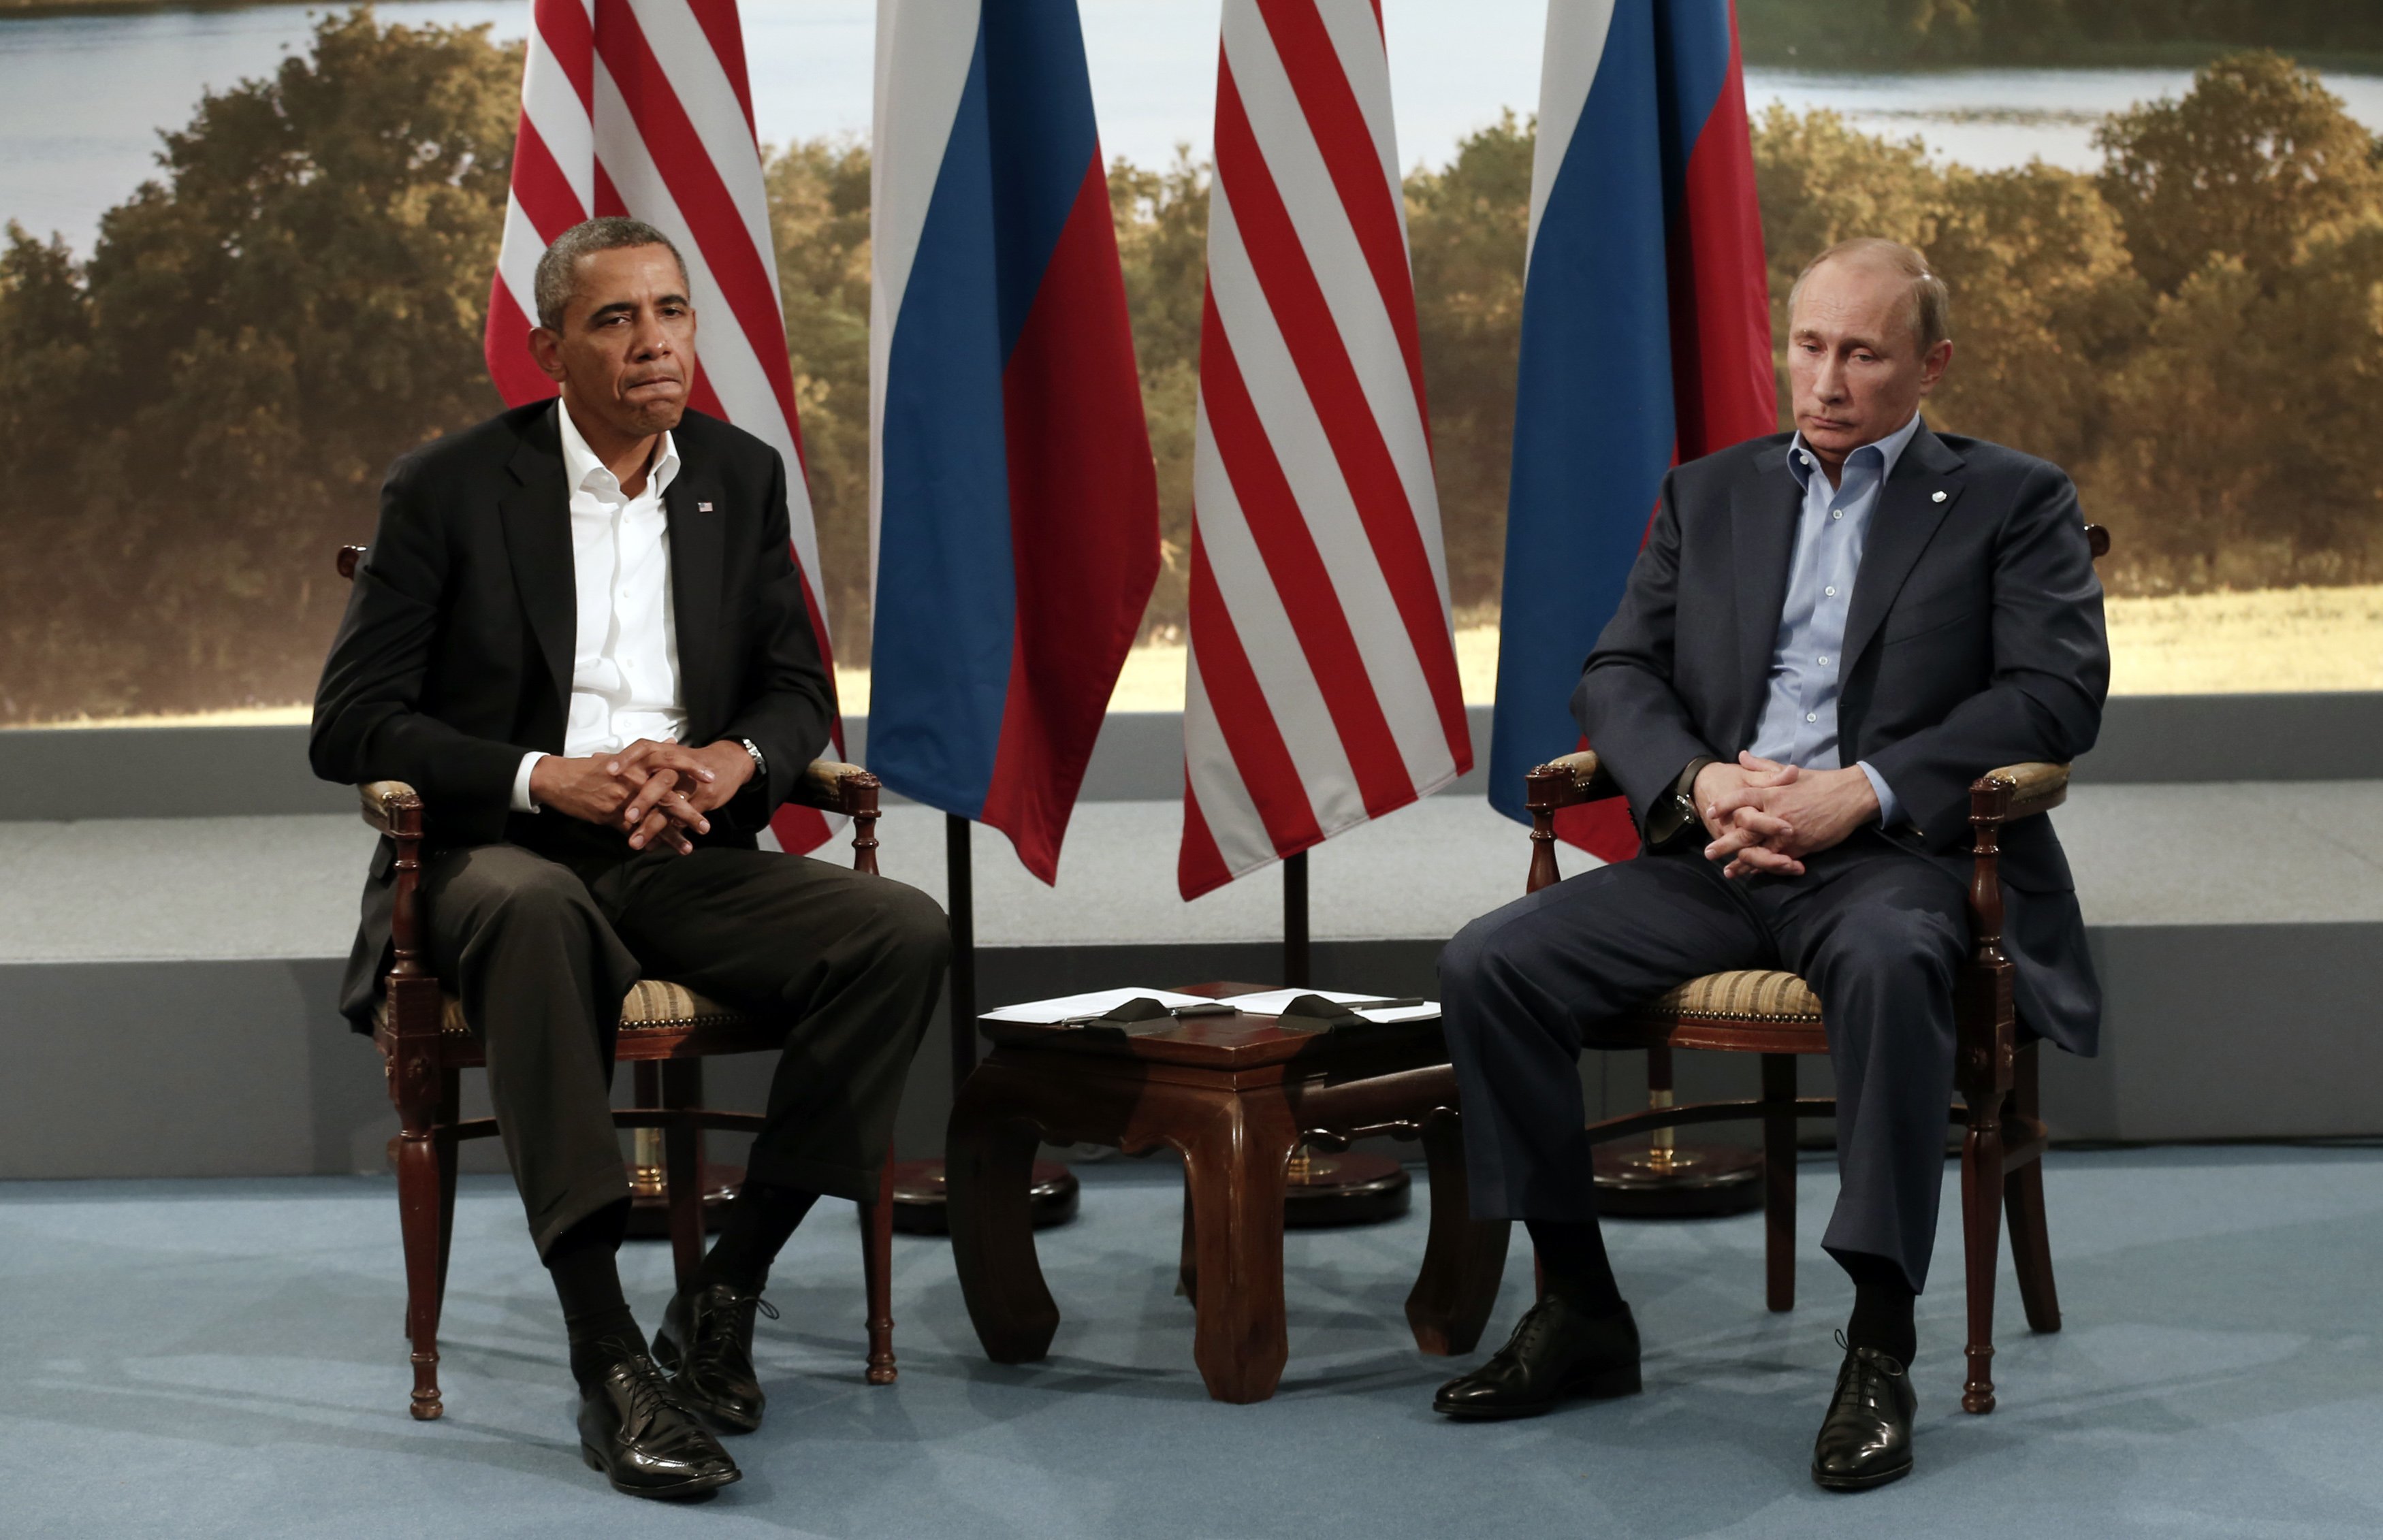 Κρεμασμένοι στο τηλέφωνο ενώ η Ουκρανία διαμελίζεται – Ομπάμα: “Βλαντιμίρ, κάνε πίσω!” – Πούτιν: “Μπαράκ, μη θυσιάζεις τη σχέση μας για την Κριμαία”